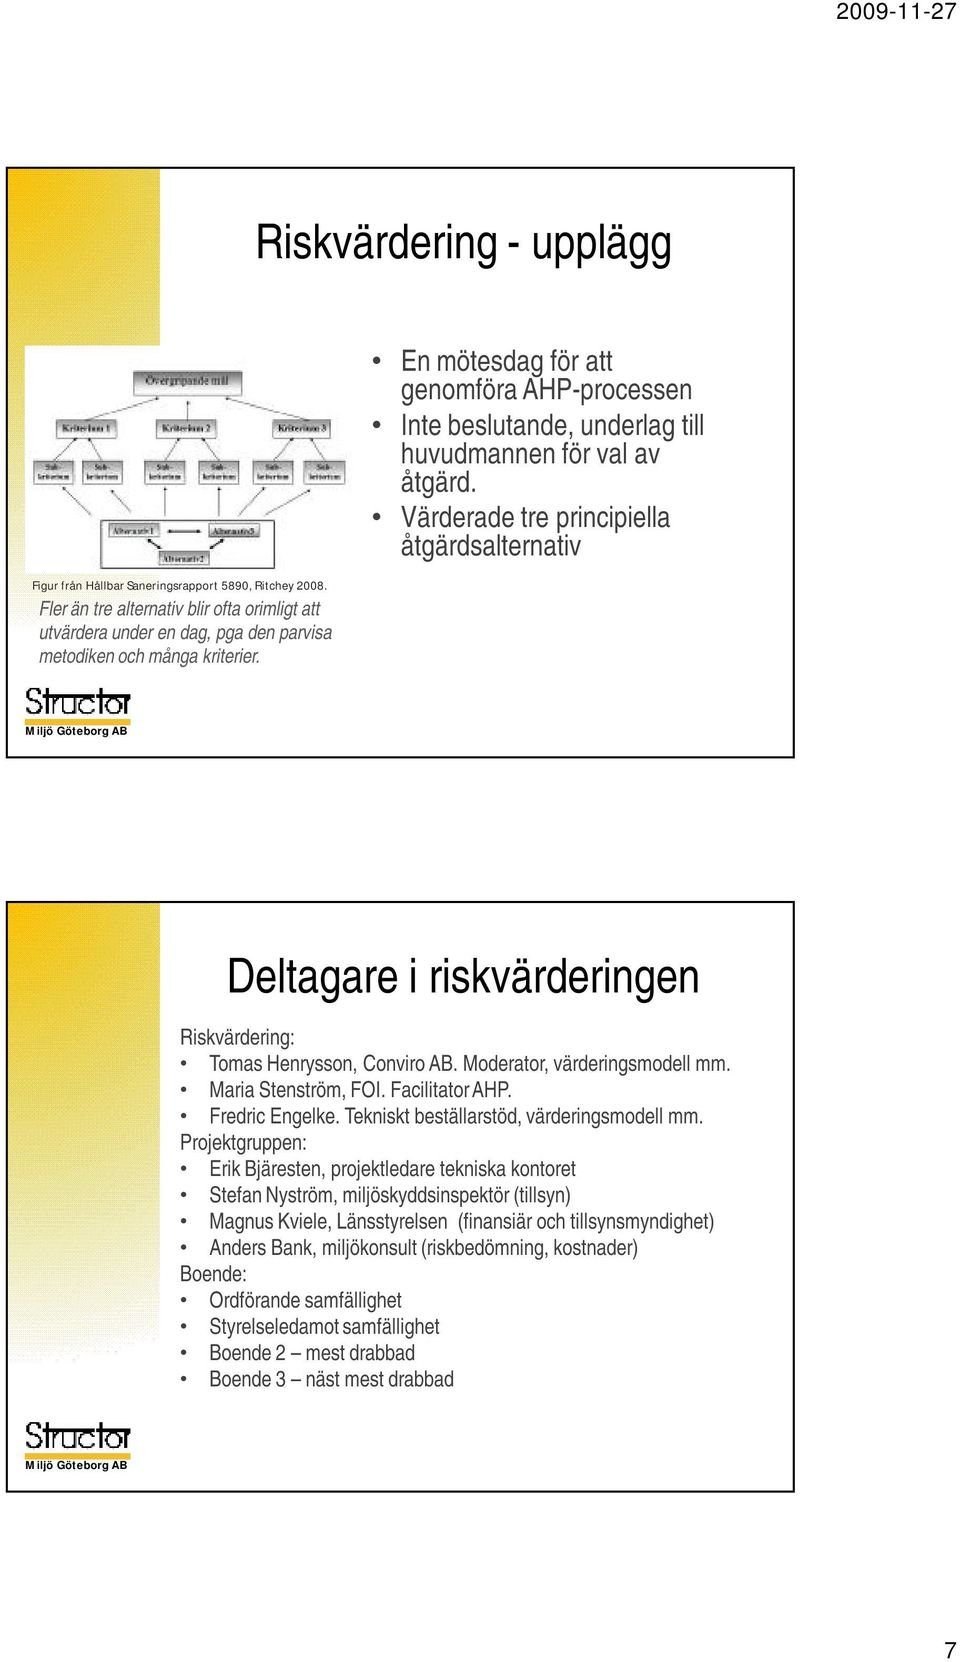 Värderade tre principiella åtgärdsalternativ Deltagare i riskvärderingen Riskvärdering: Tomas Henrysson, ConviroAB. Moderator, värderingsmodell mm. Maria Stenström, FOI. FacilitatorAHP.